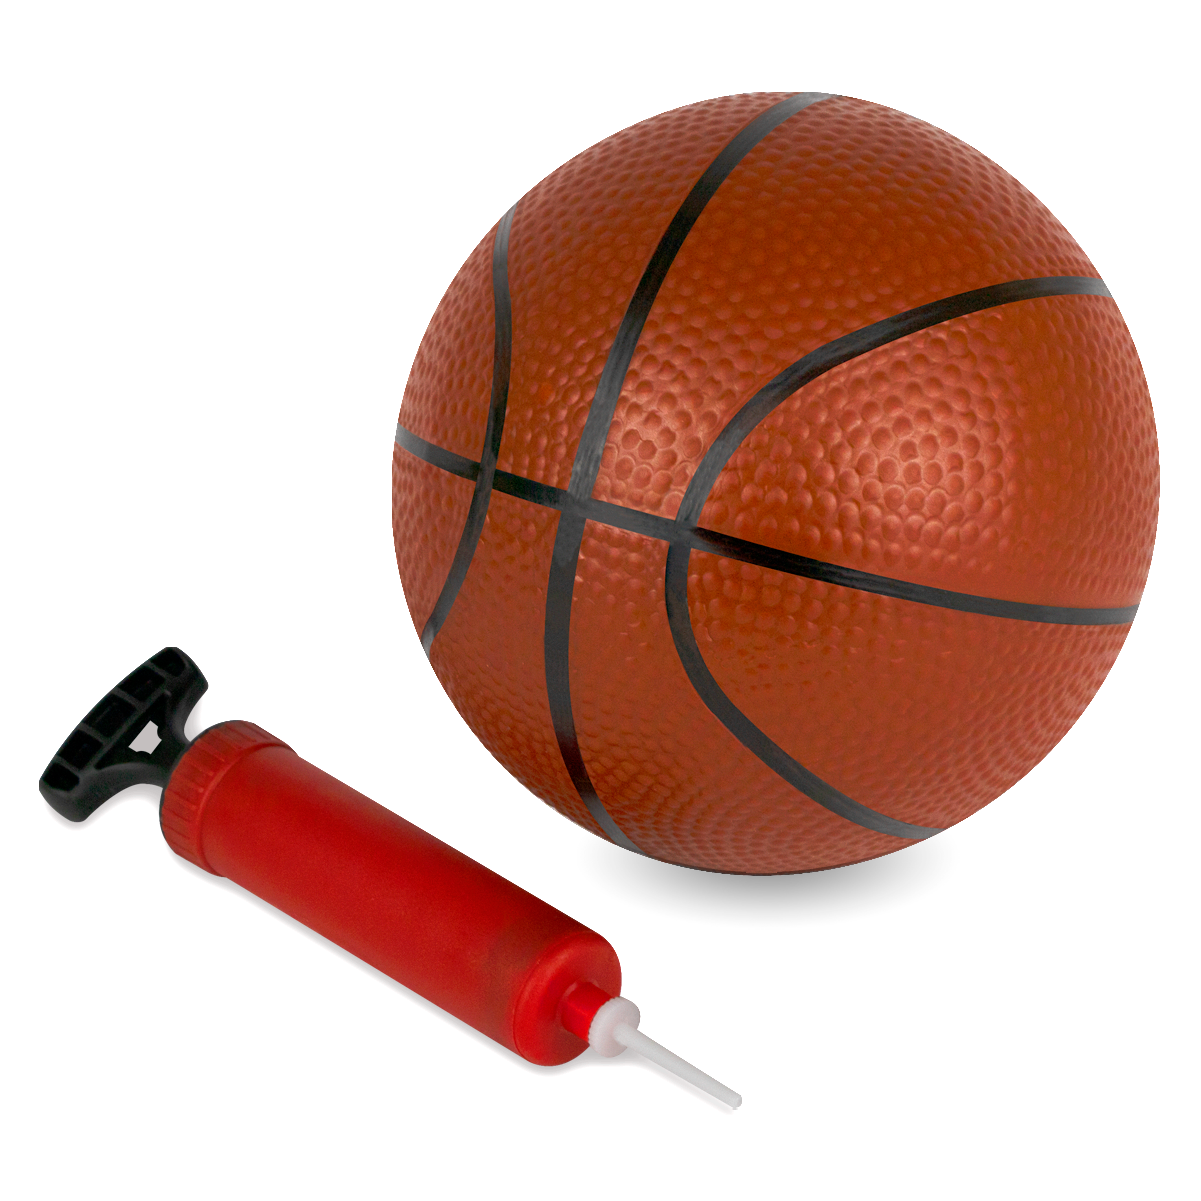 Basquete Infantil Pedestal Ajustavel 170cm Zippy Toys Basketball 2 Em 1 Com Bola - 9